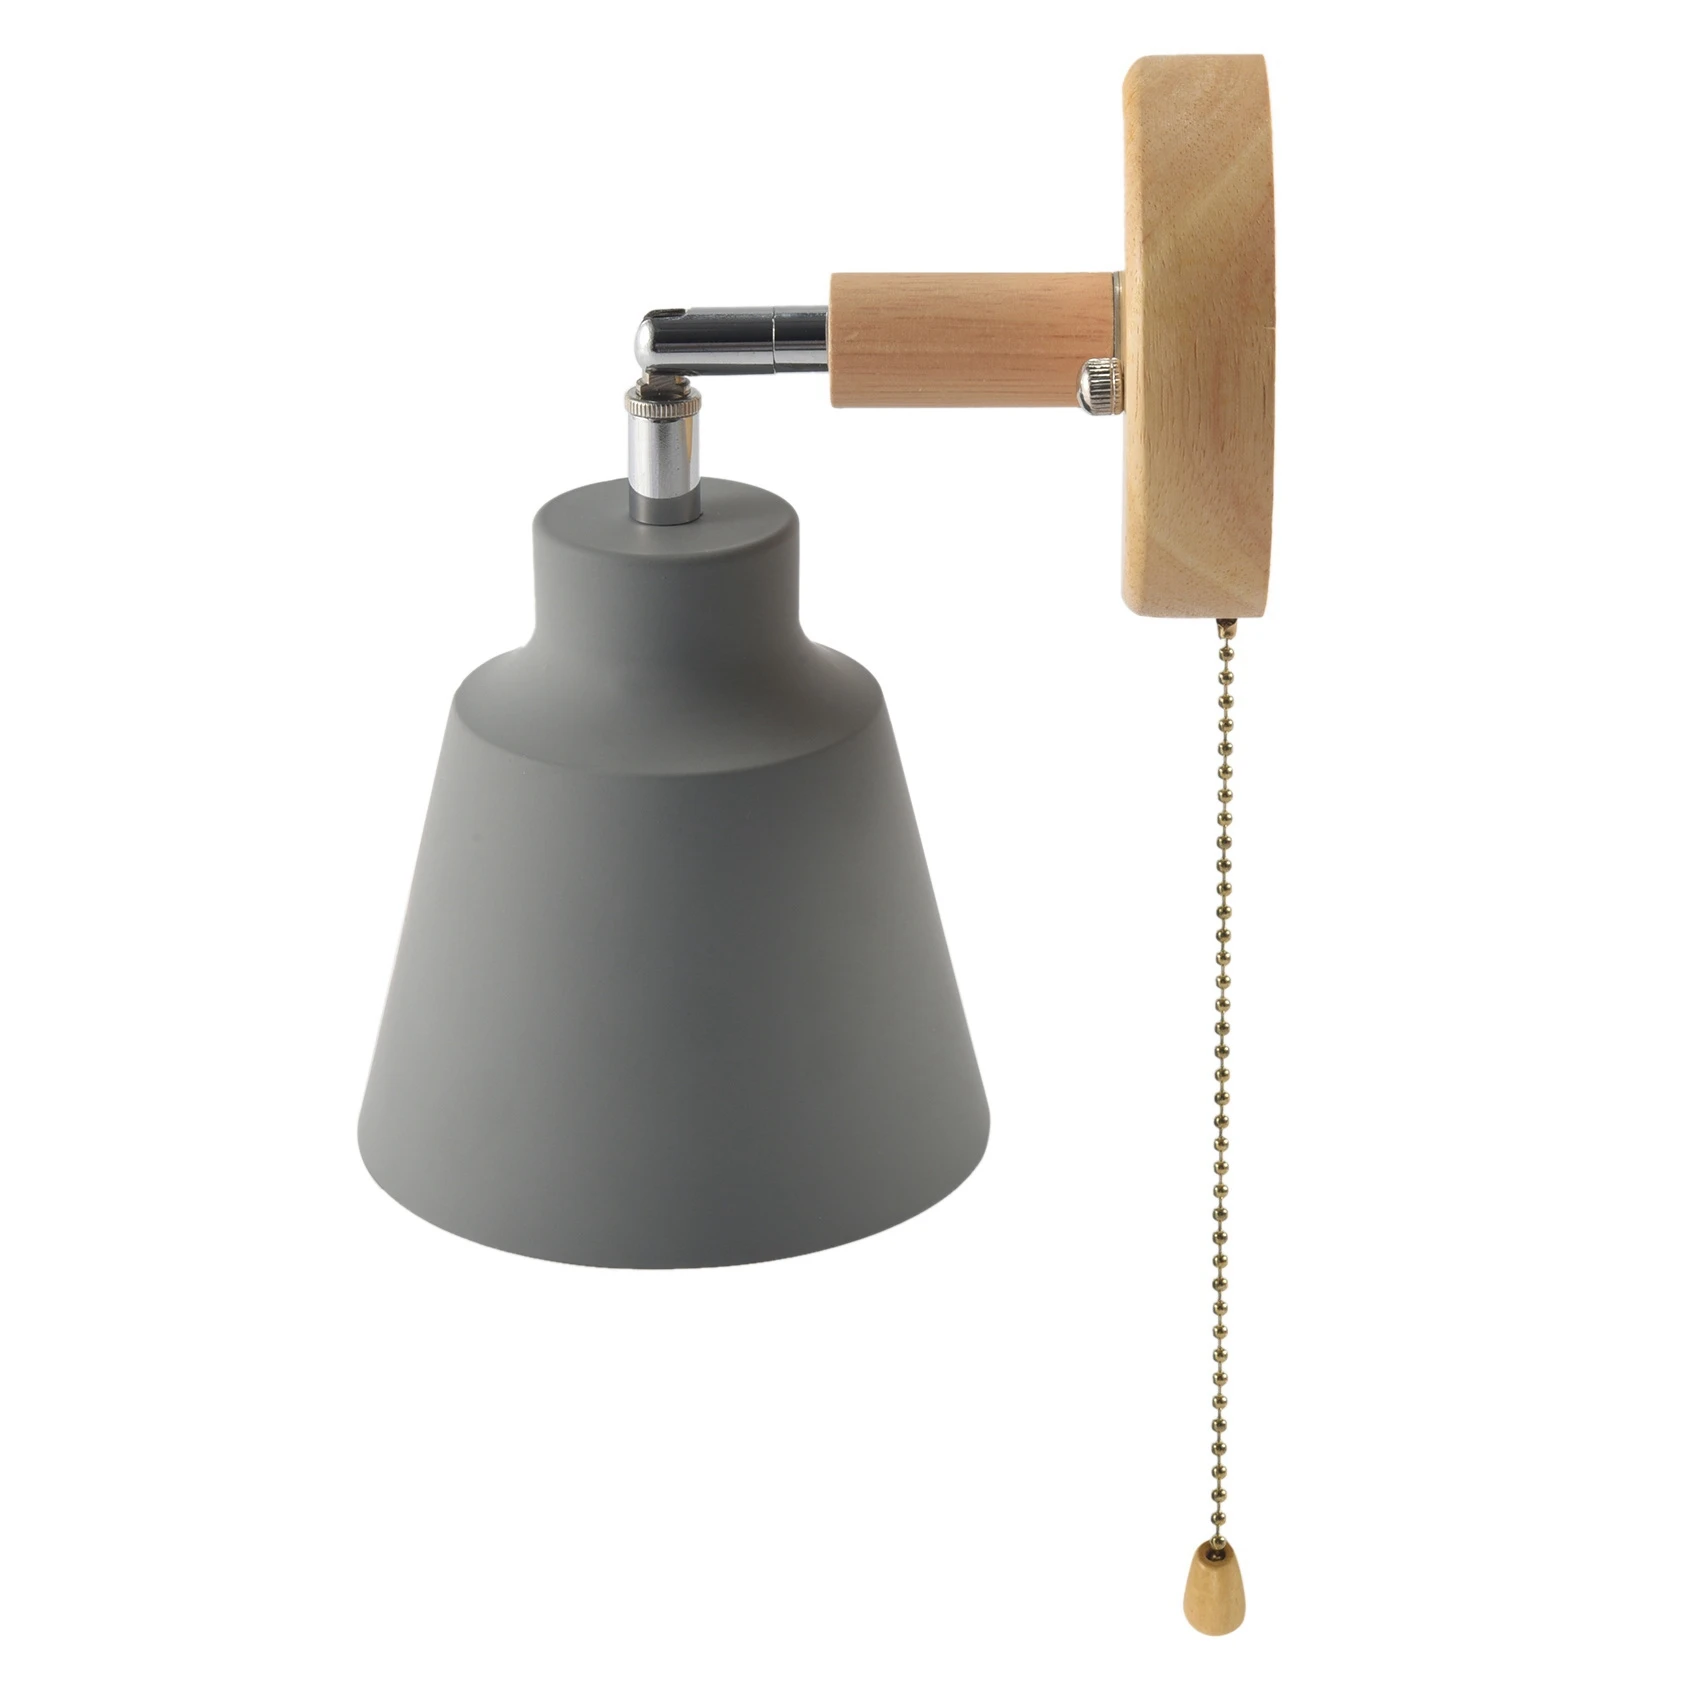 

Скандинавская деревянная настенная лампа, прикроватный светильник, настенное освещение, для спальни, коридора, с переключателем на молнии, Свободно вращается (серый)